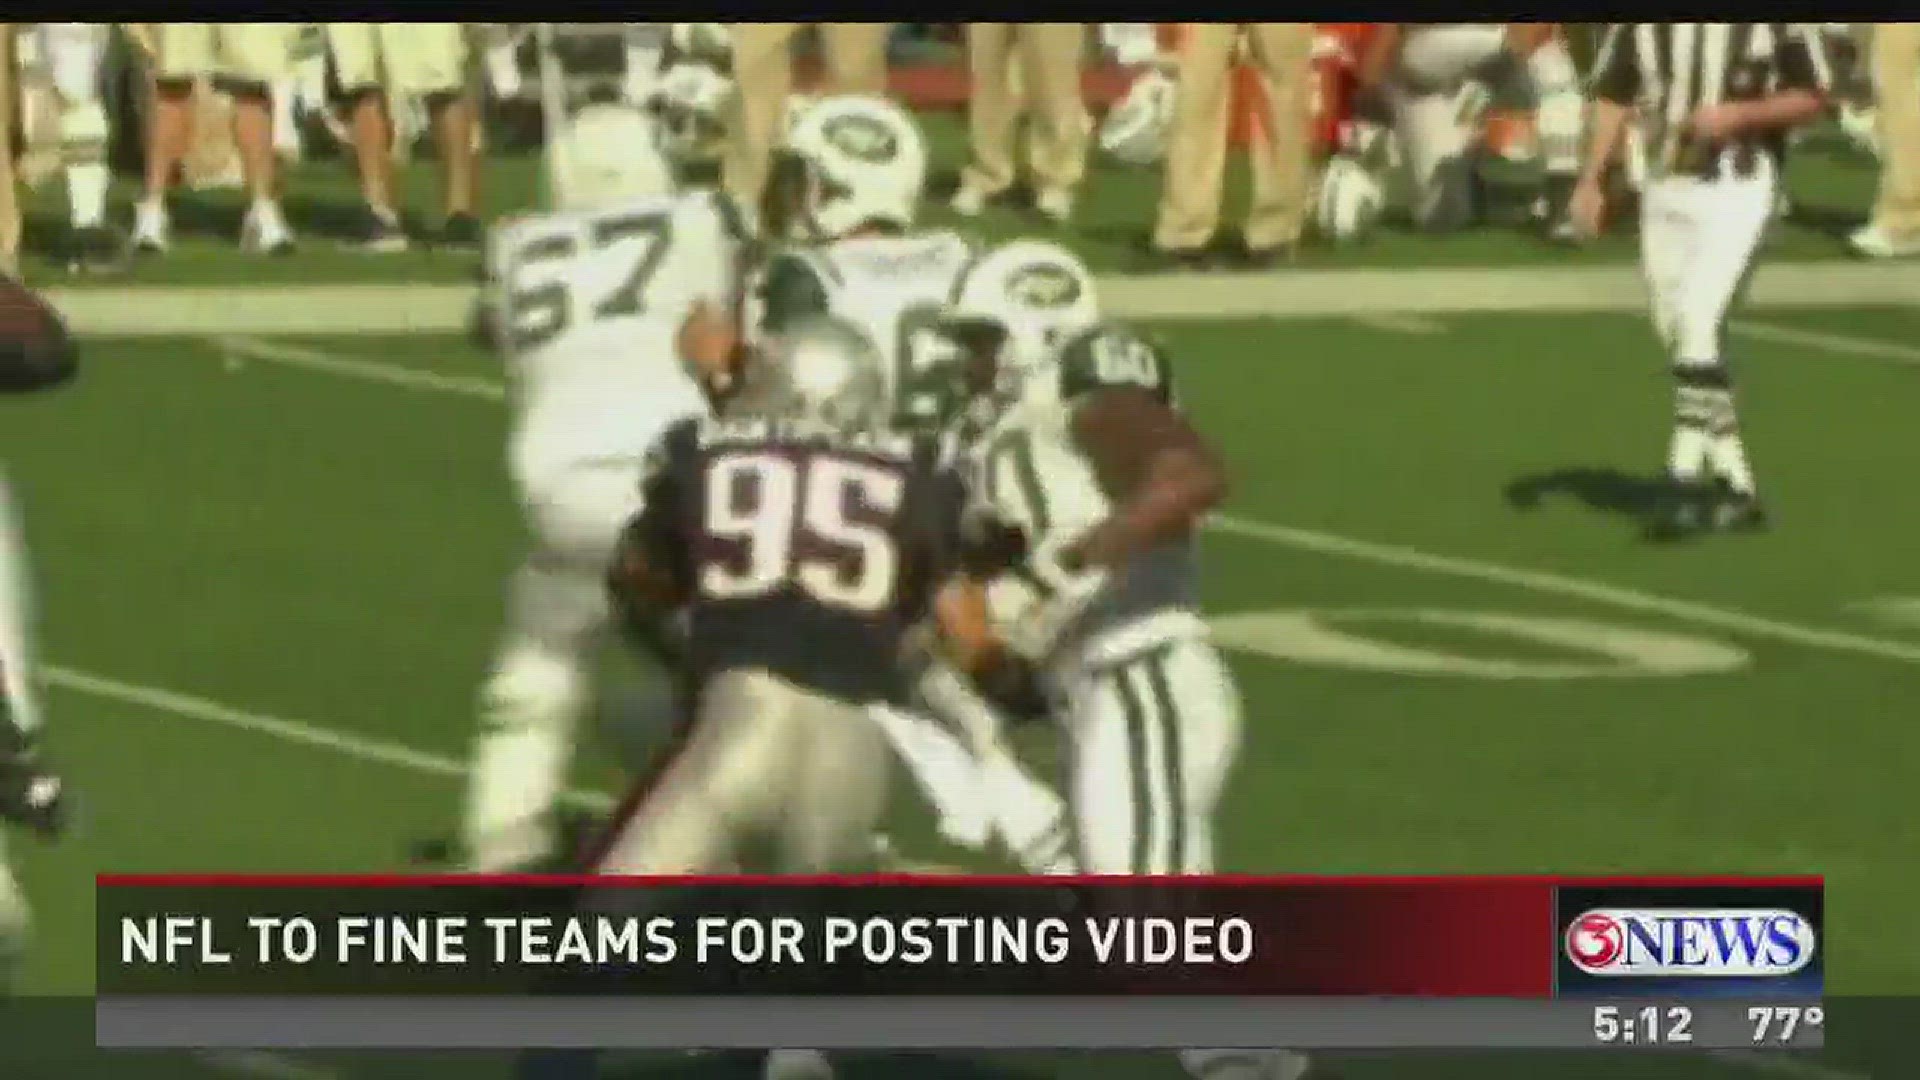 NFL to fine teams who post video on social media kiiitv